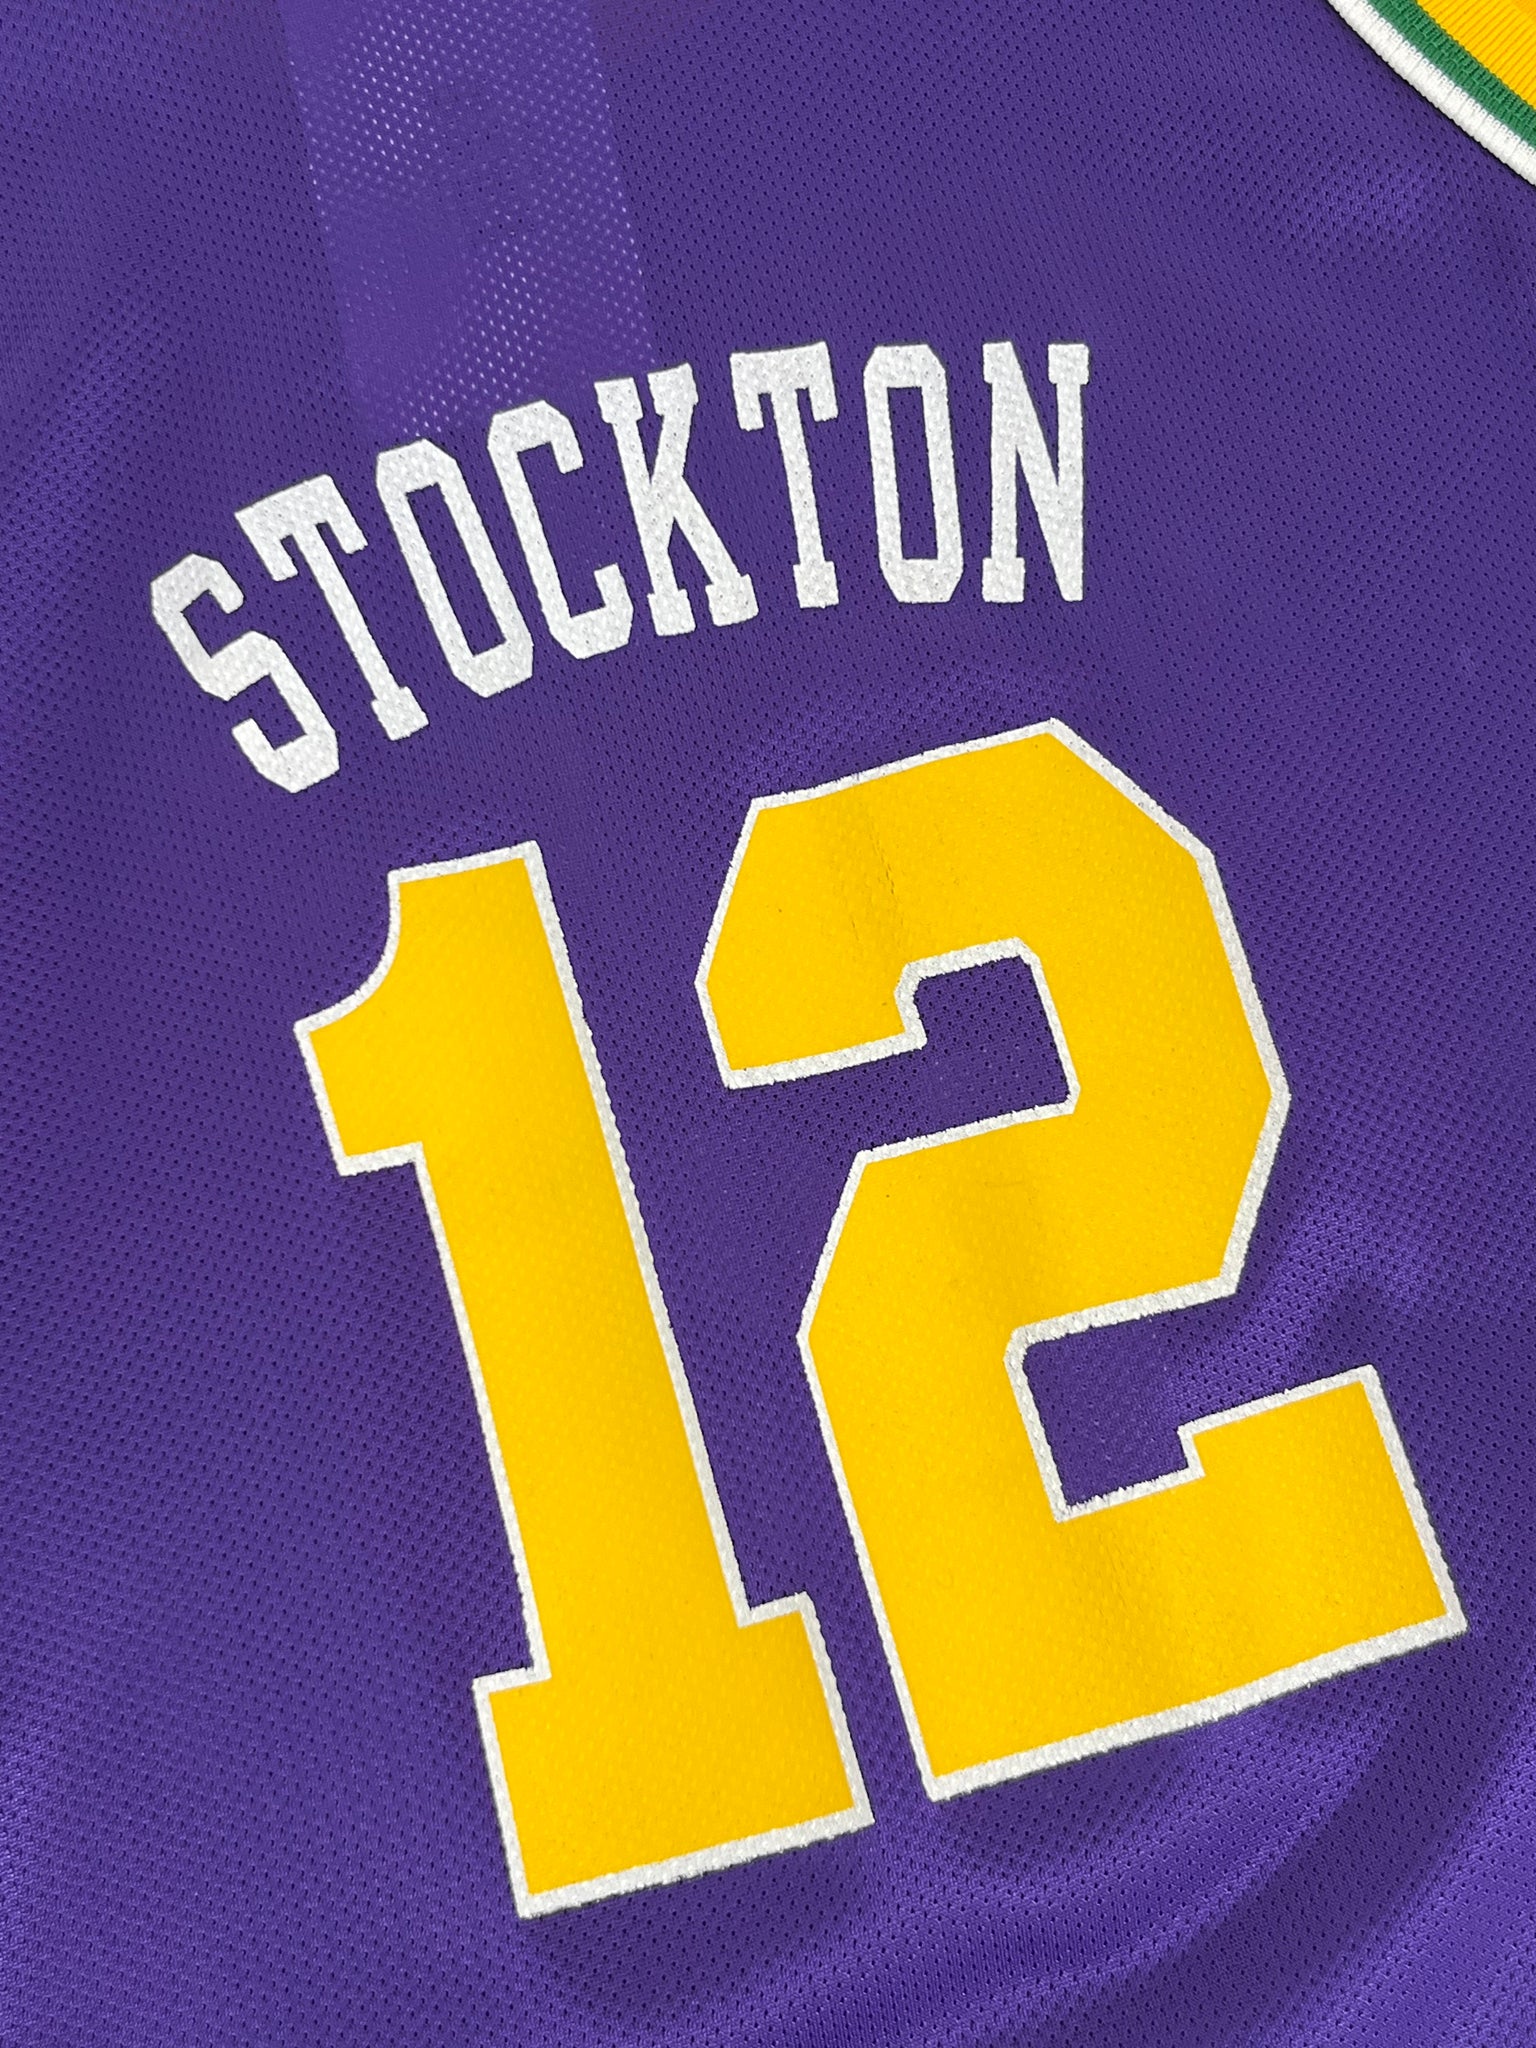 John Stockton Utah Jazz Champion Jersey RARE 90s VINTAGE Size L Large